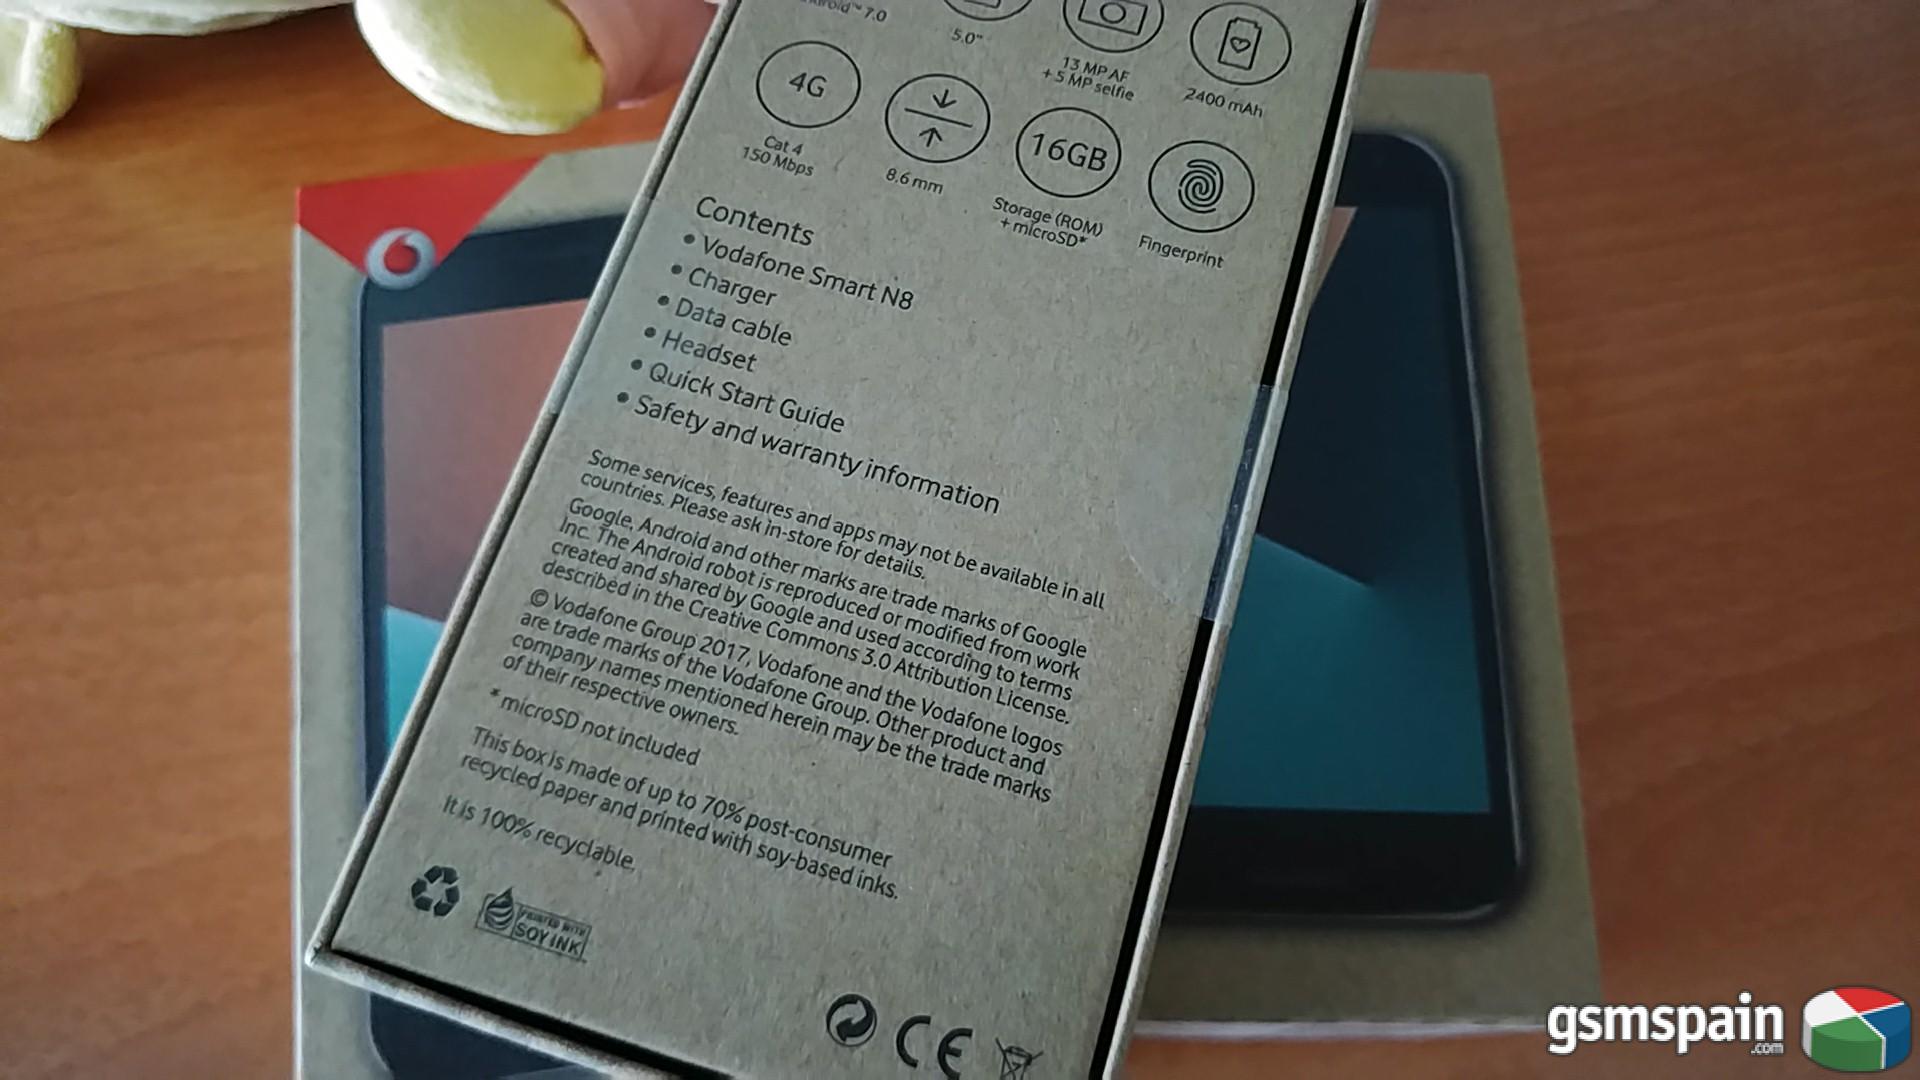 [VENDO] Vodafone Smart N8 precintados Baratos